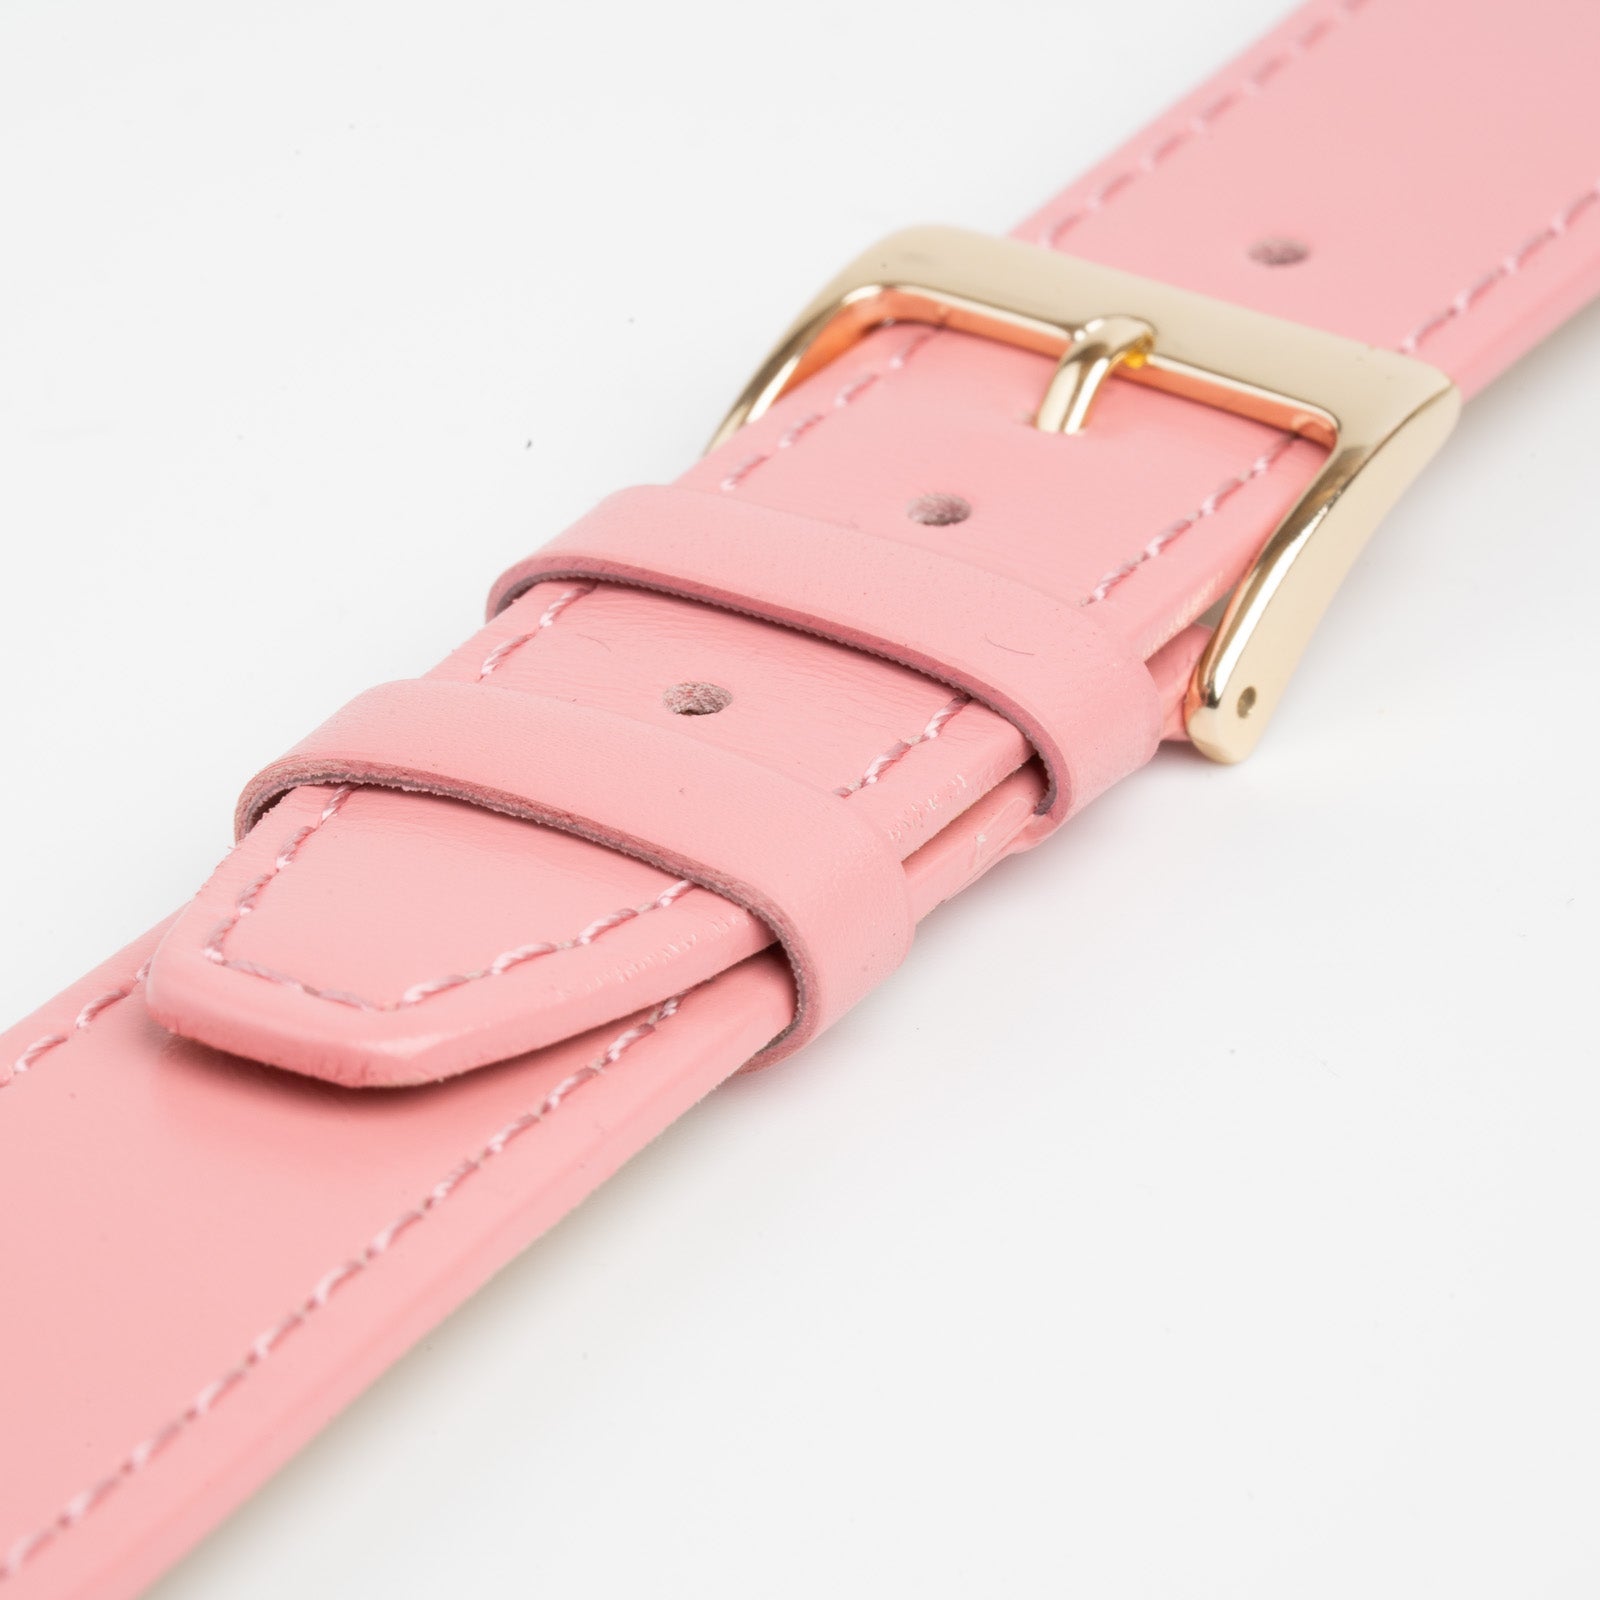 Mayfair Subtle Pink Watch Strap